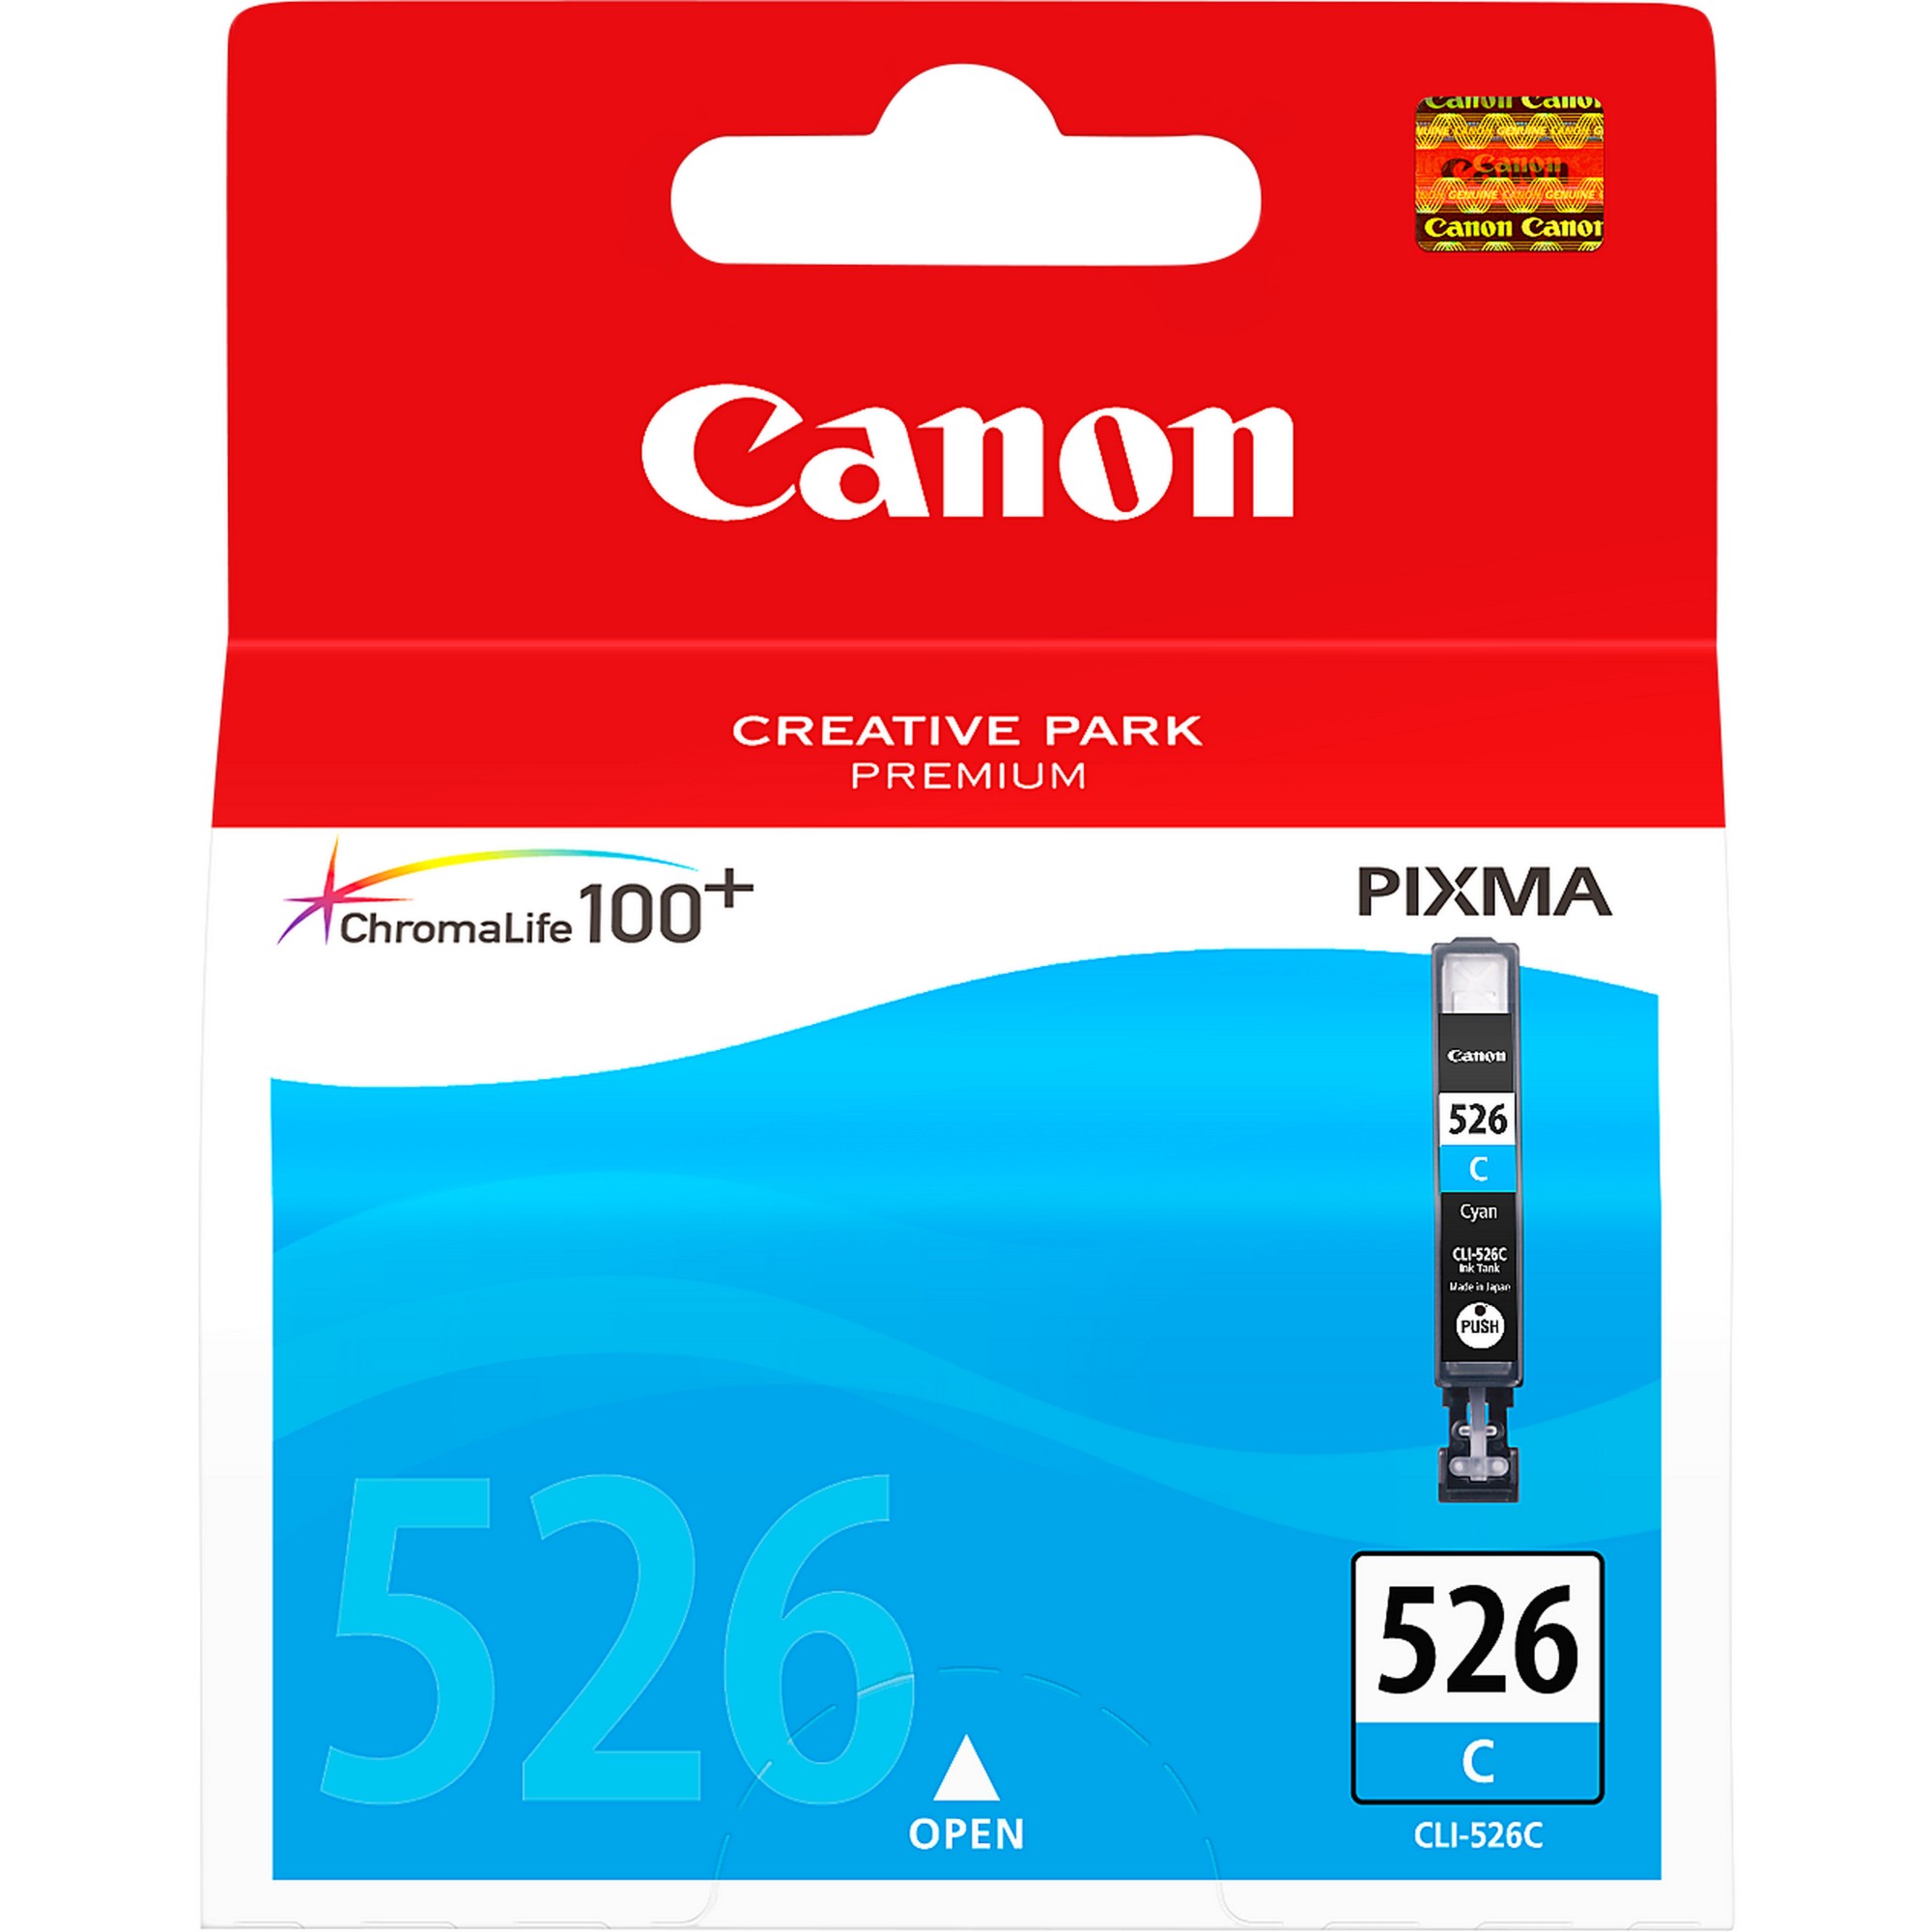 Canon CLI-526 Cyan Ink Cartridge